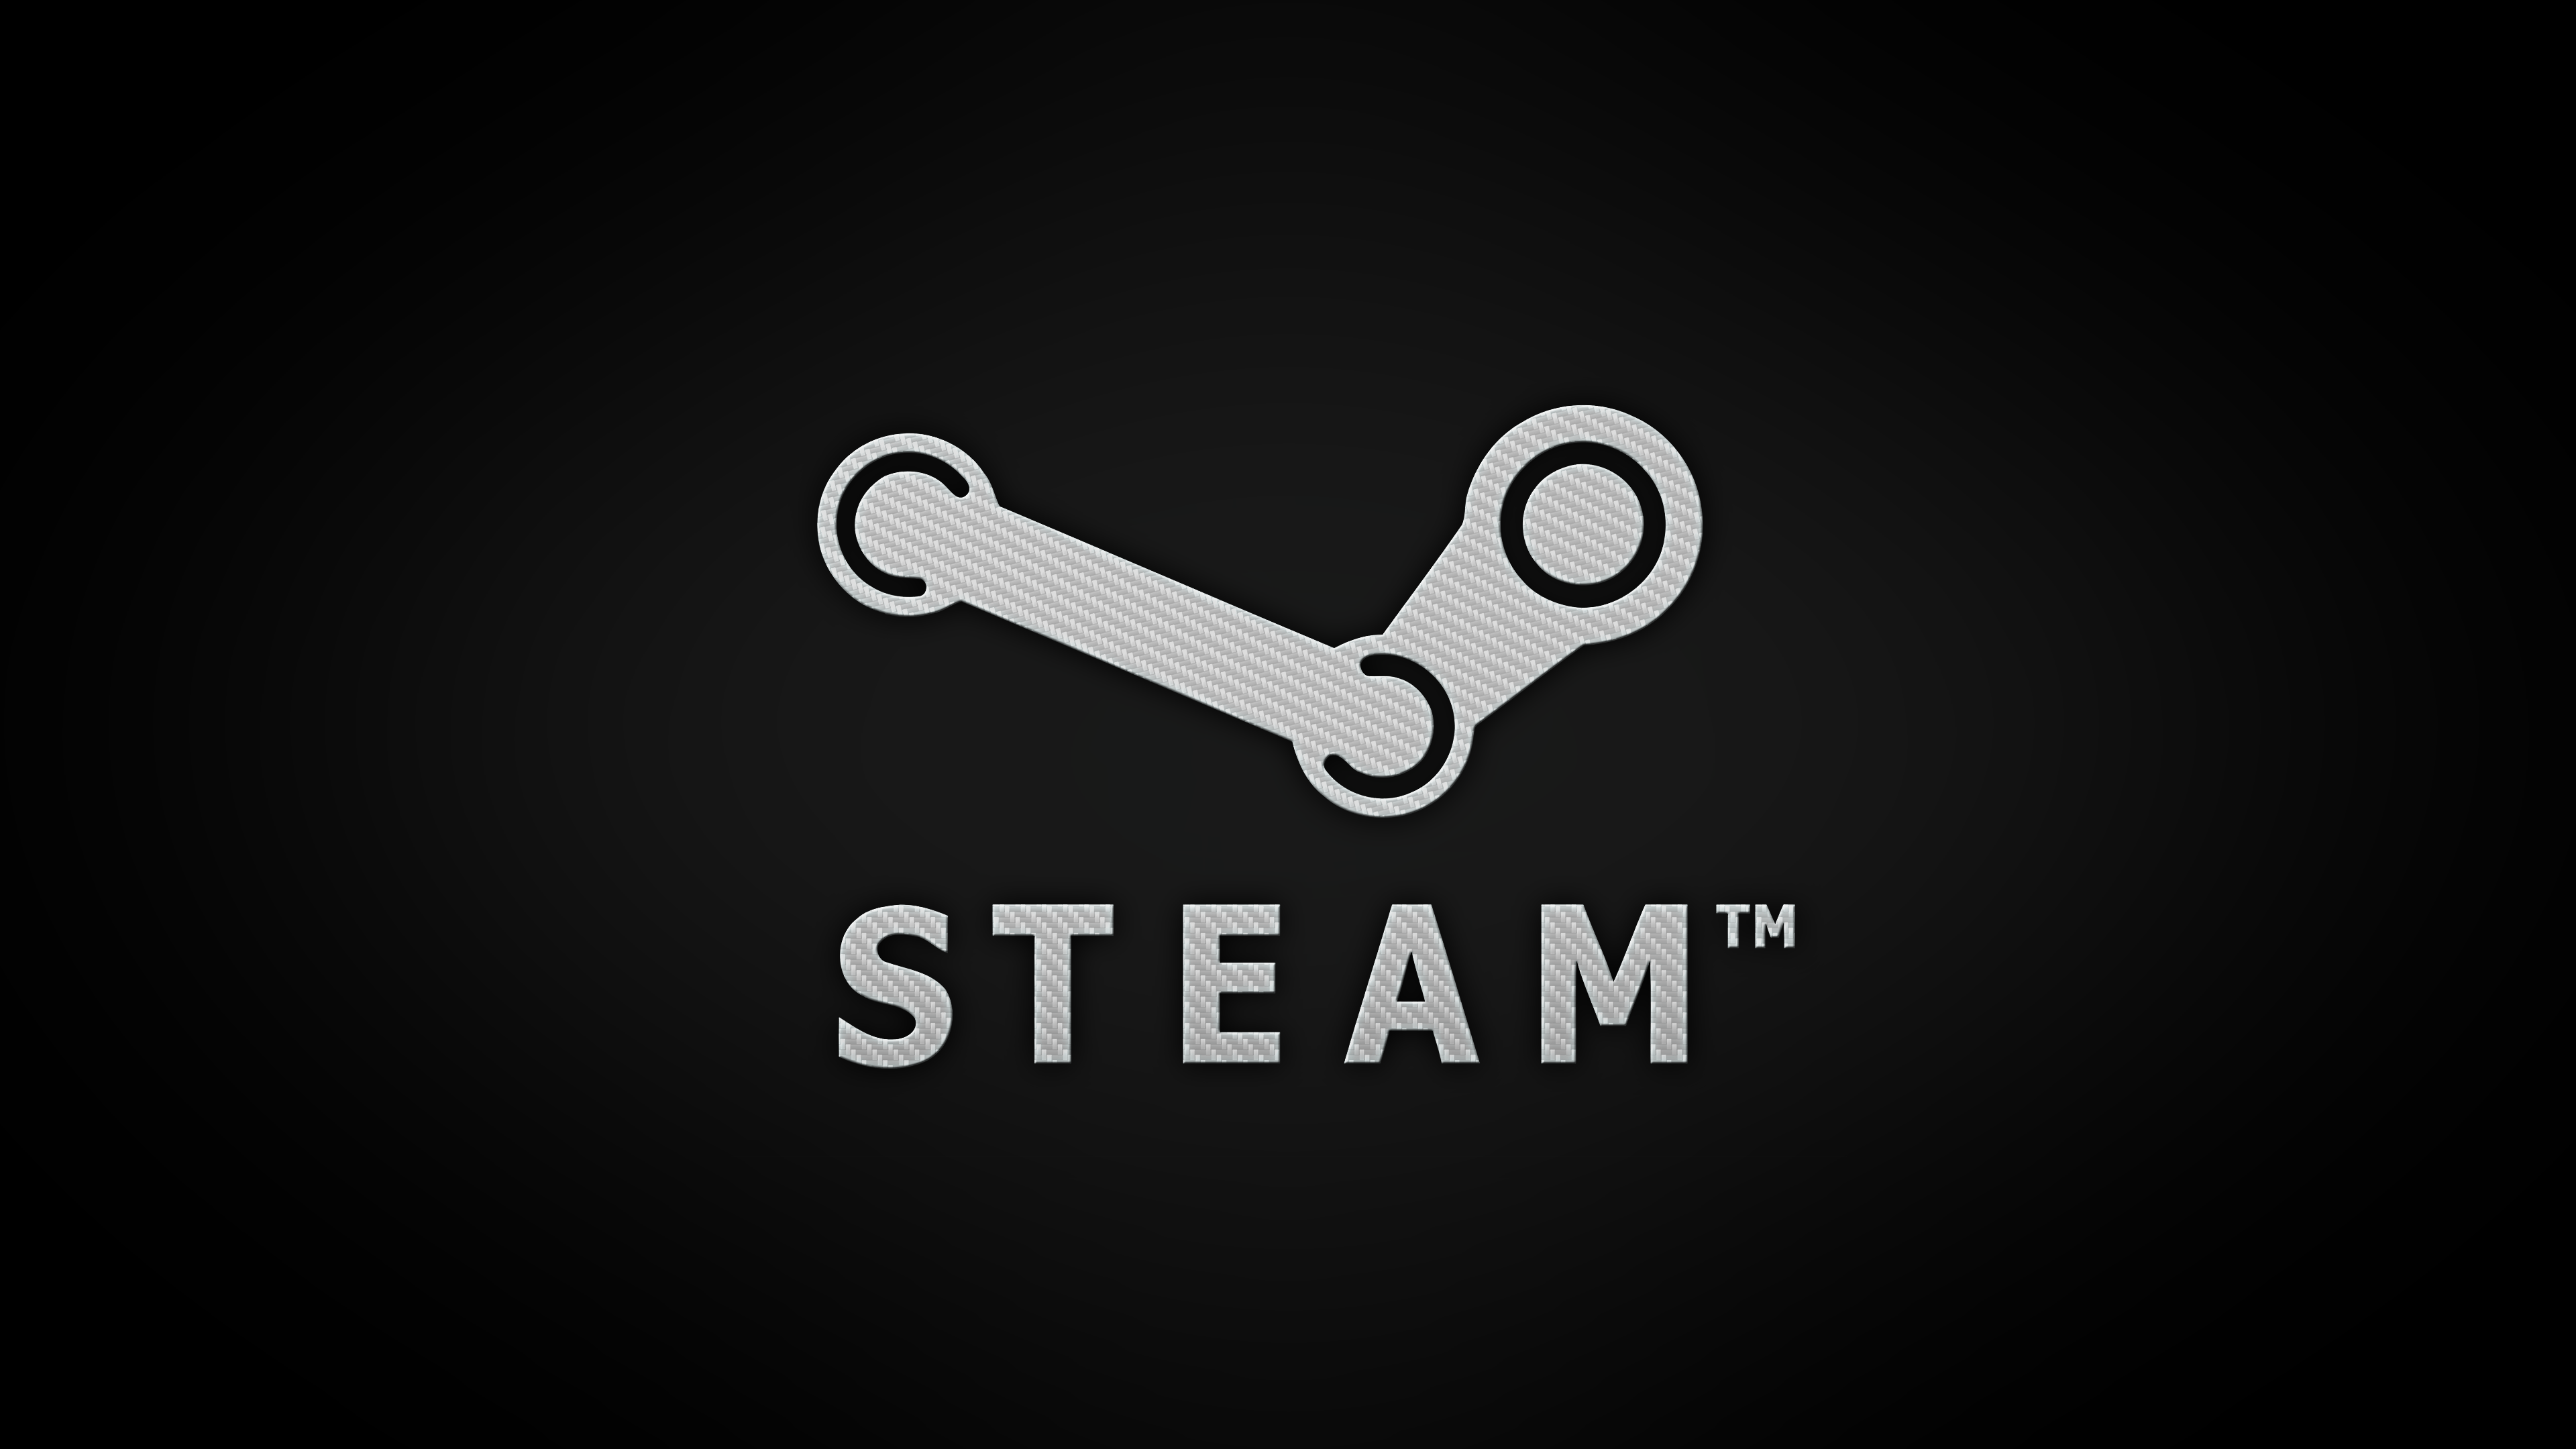 Steam Logo Wallpapers - Top Những Hình Ảnh Đẹp